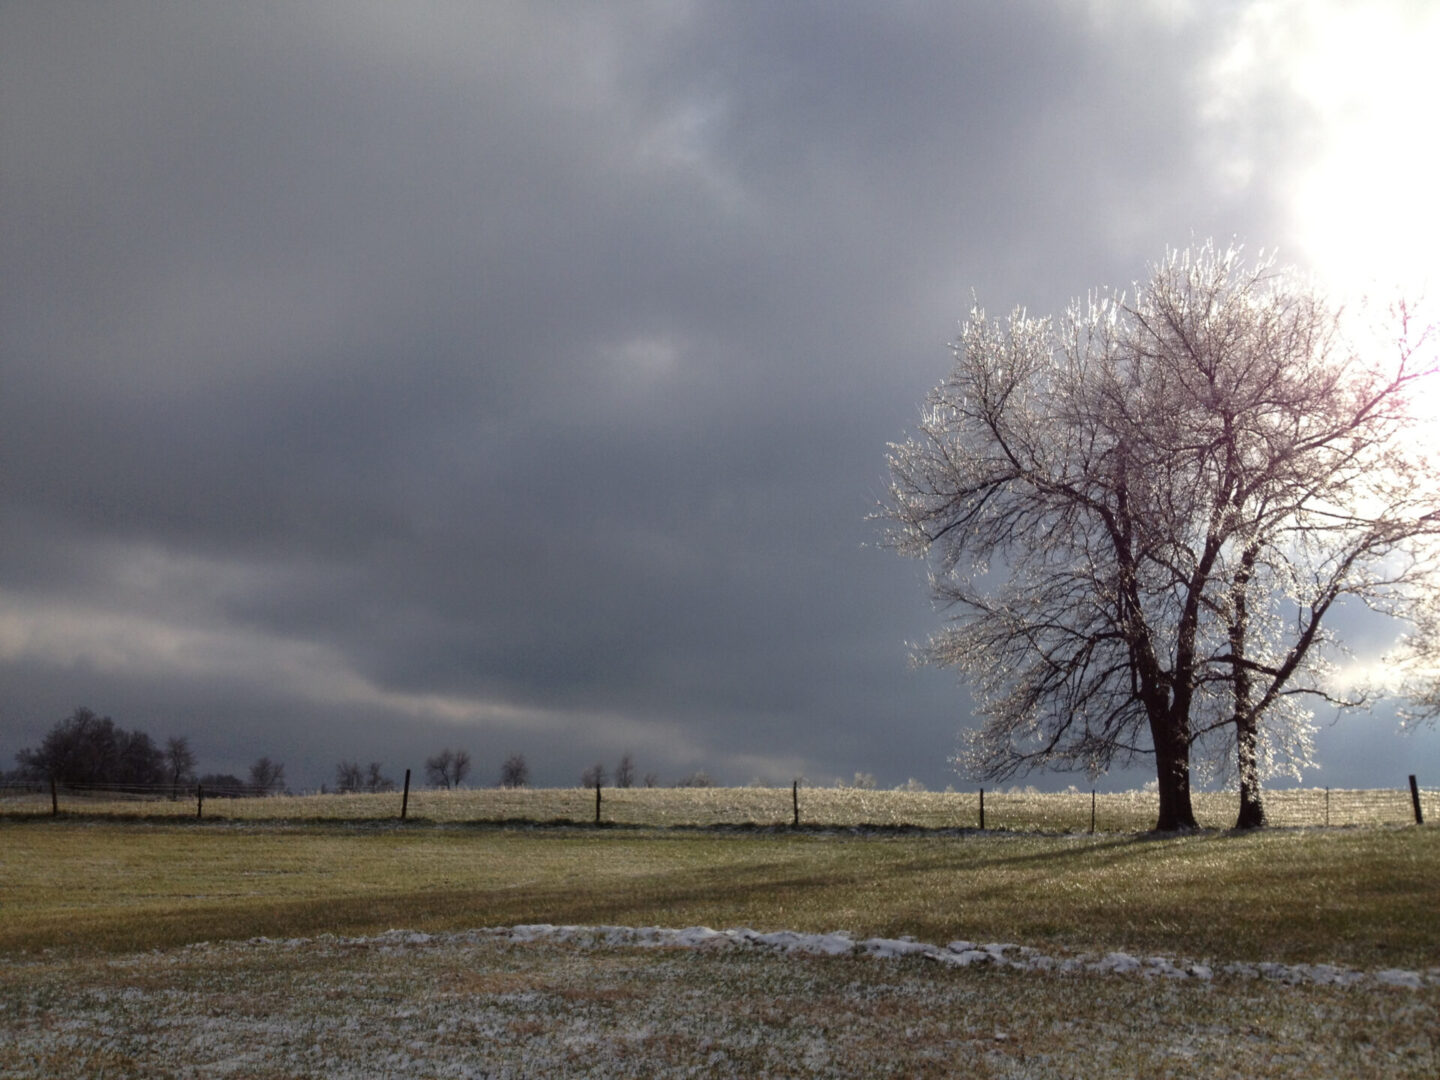 A lone tree in a snowy field.